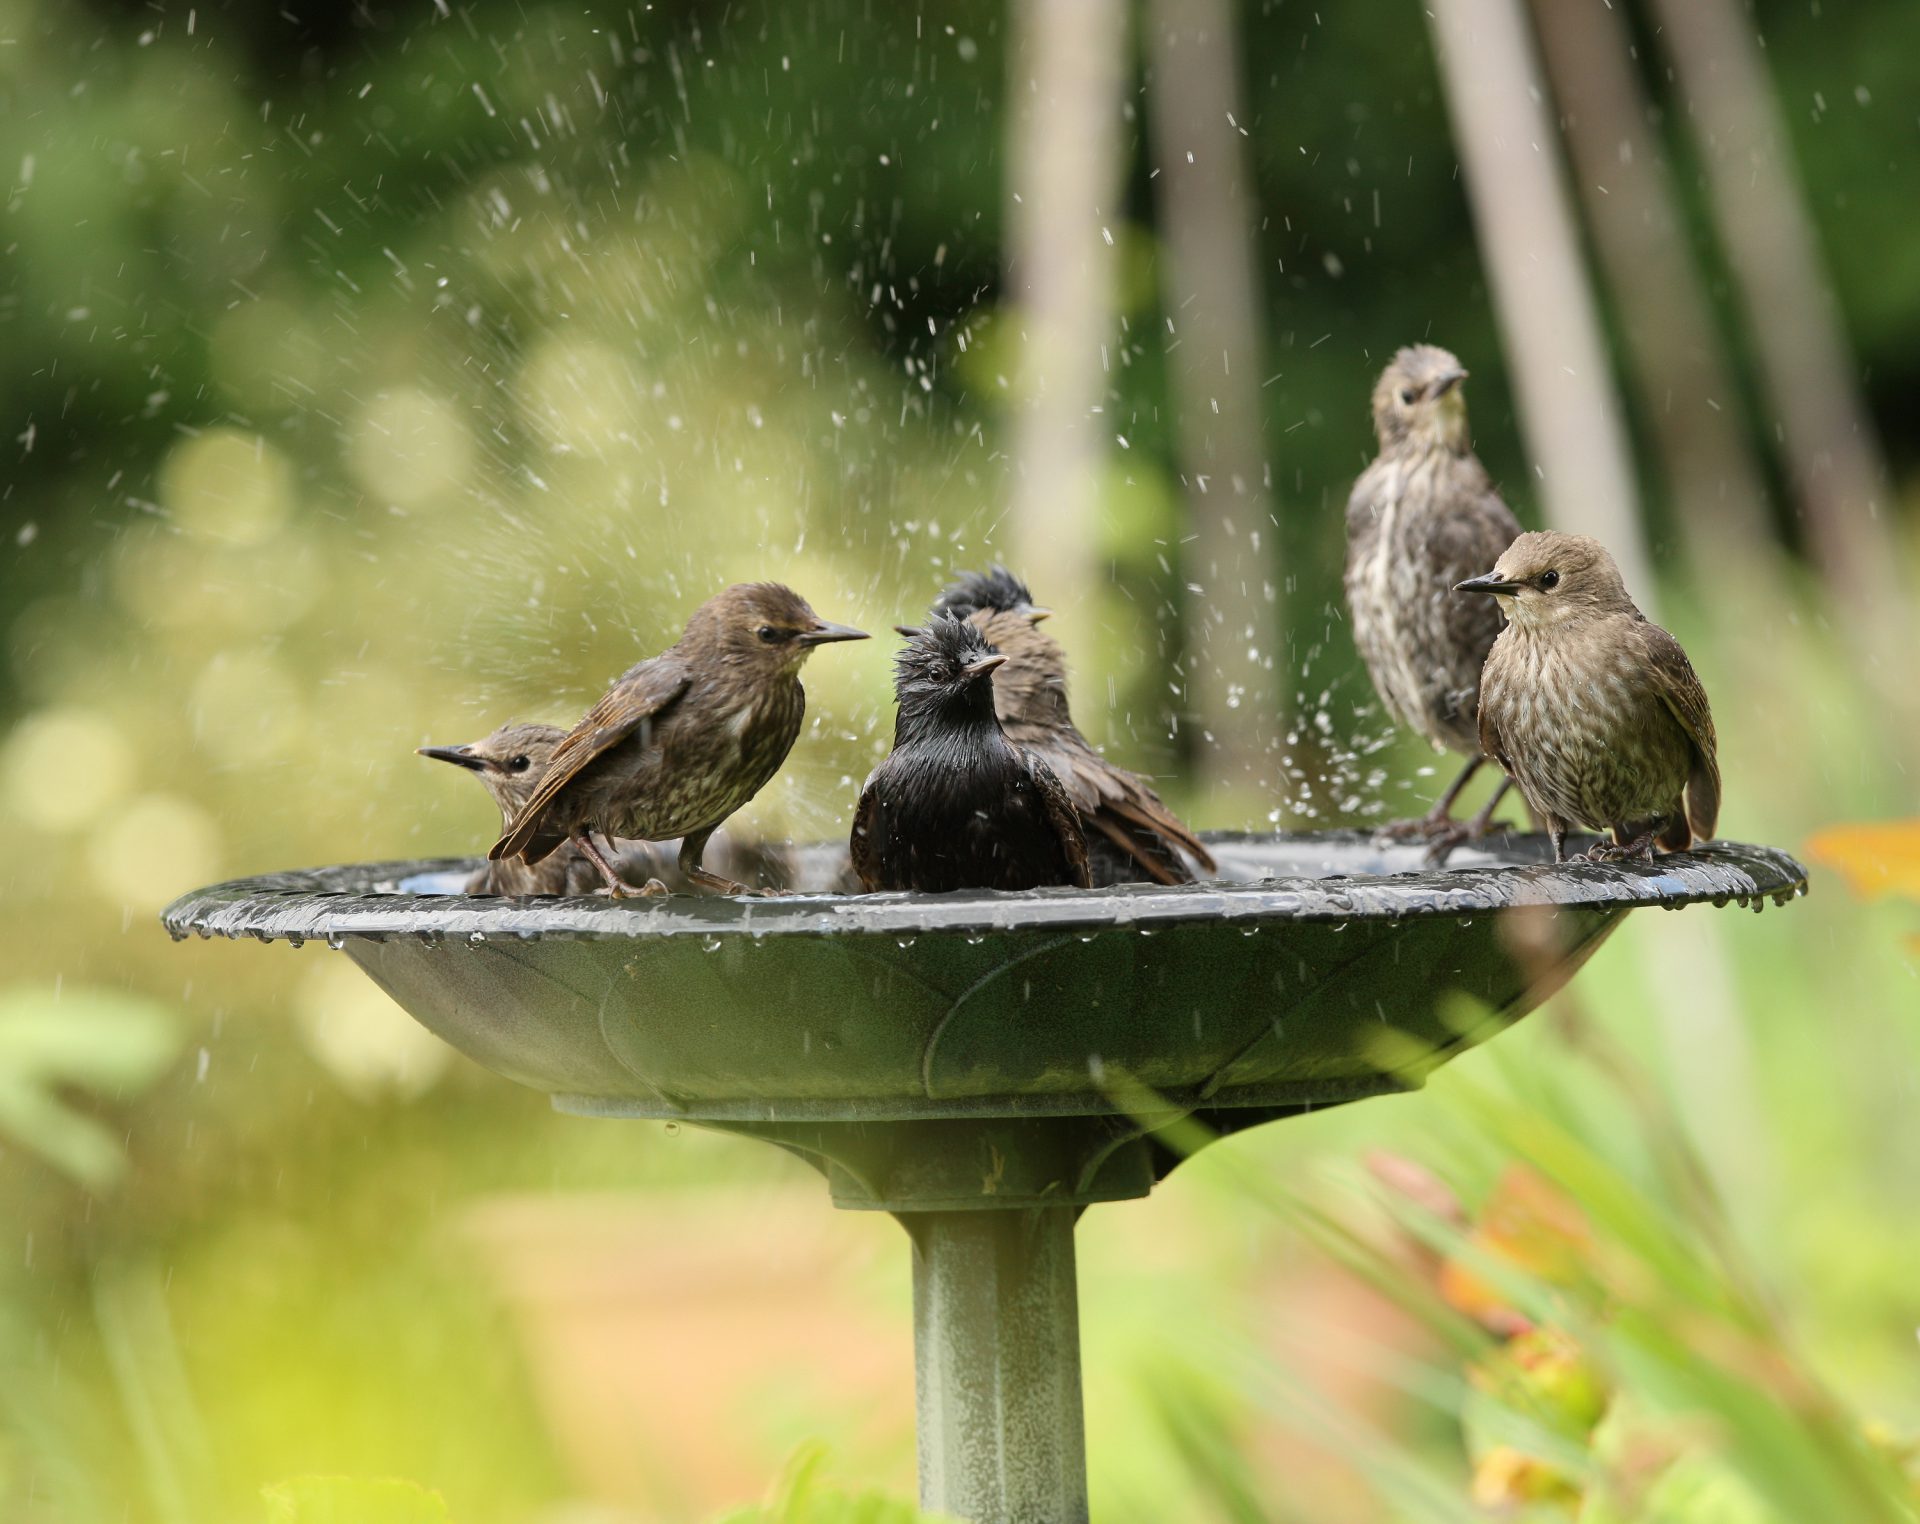 Providing Water for Birds | Celebrate Urban Birds